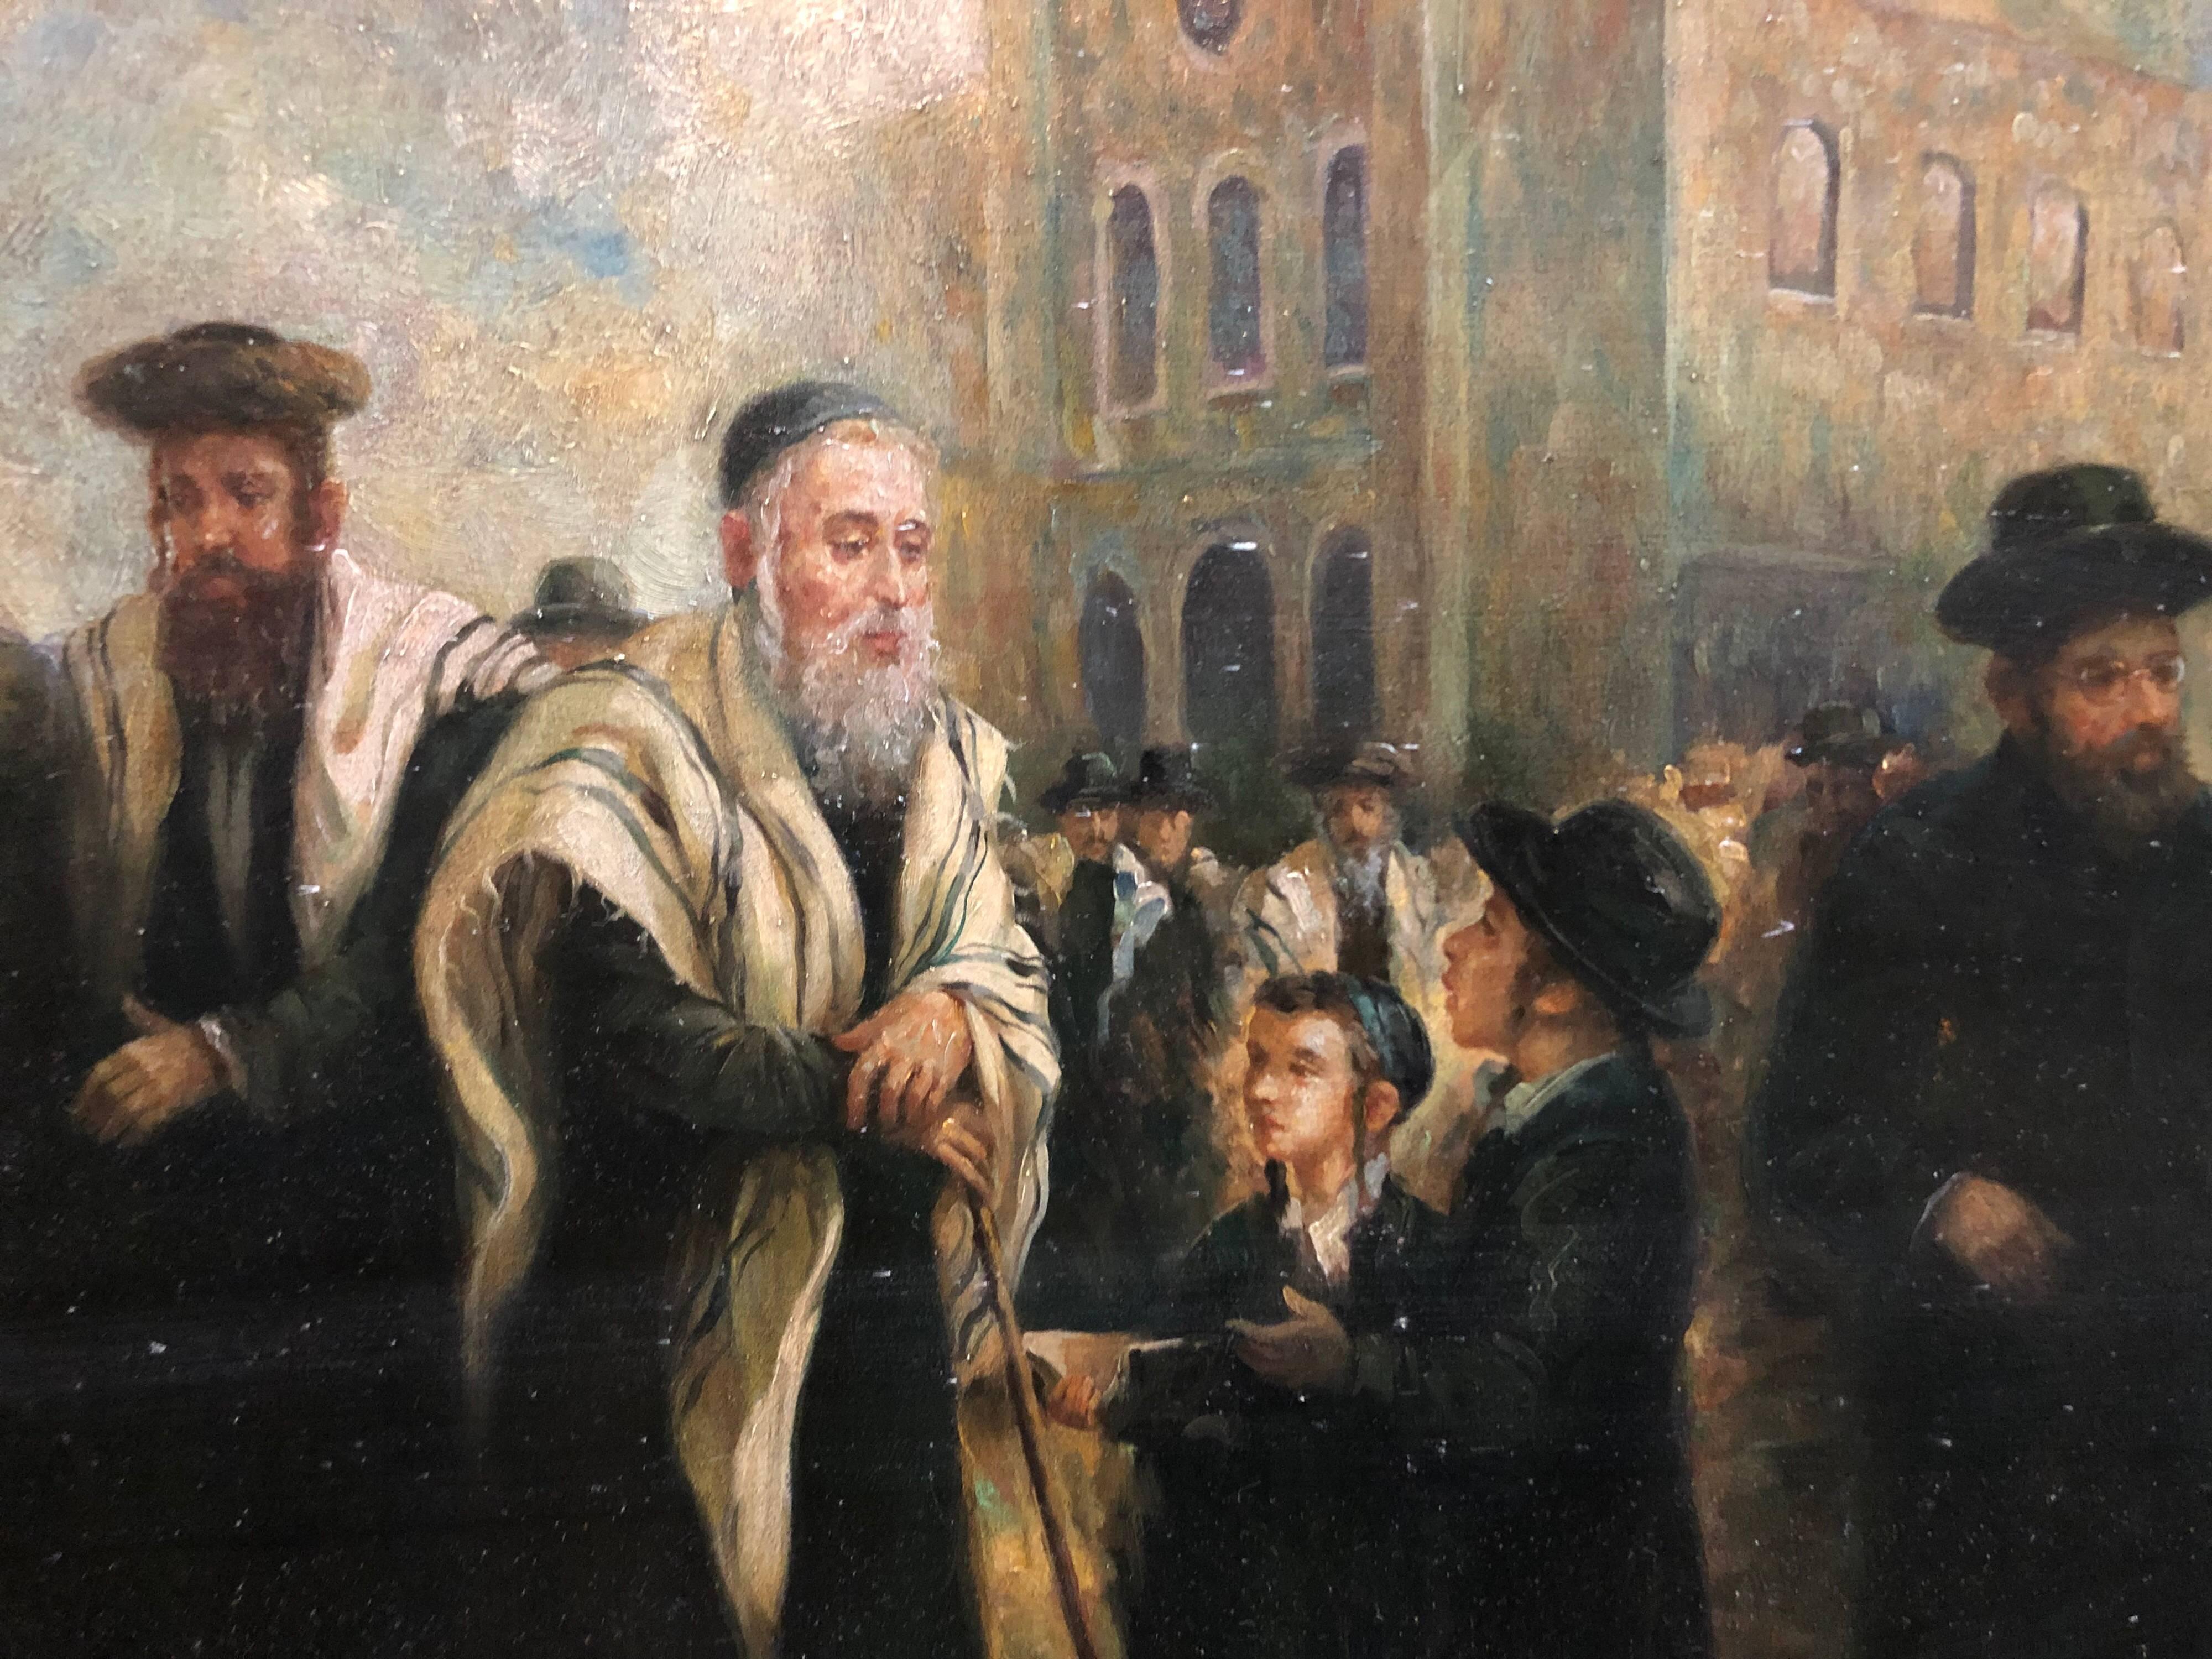 Portrait réaliste d'un rabbin âgé visitant et bénissant un enfant sur un marché européen. L'artiste transmet ici un sentiment de grandeur tranquille à travers les yeux de son sujet et la manière dont il est rendu. Il suit une lignée européenne